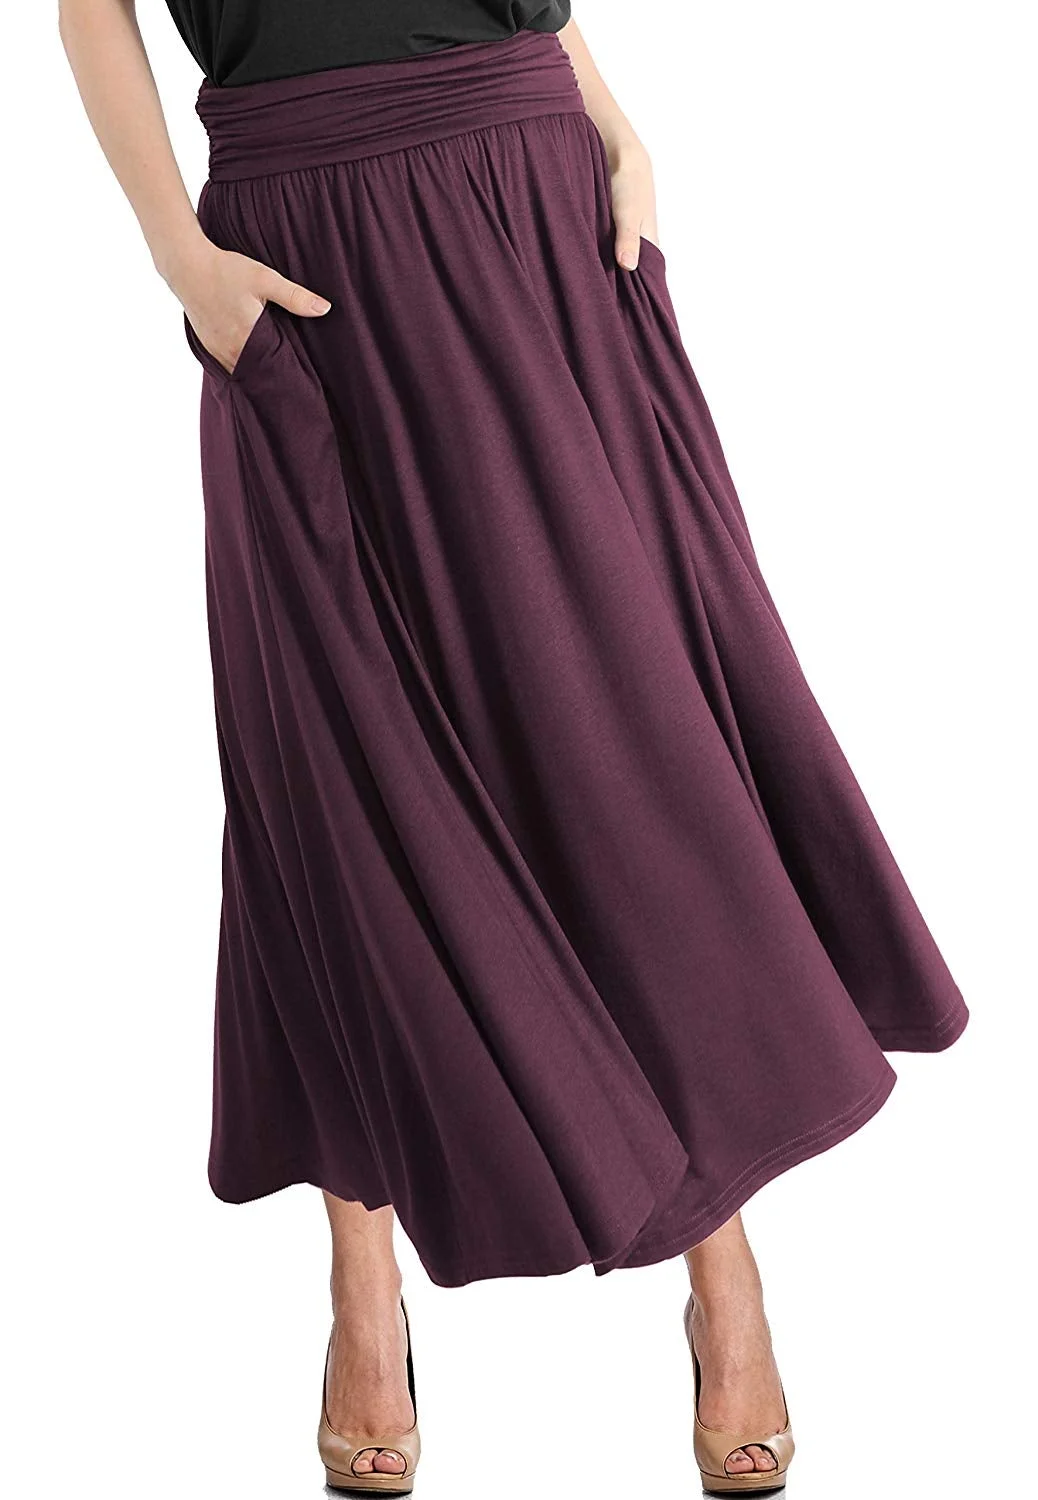 Shirring Skirt Women's High Waist Fold Over Pocket Shirring Skirt